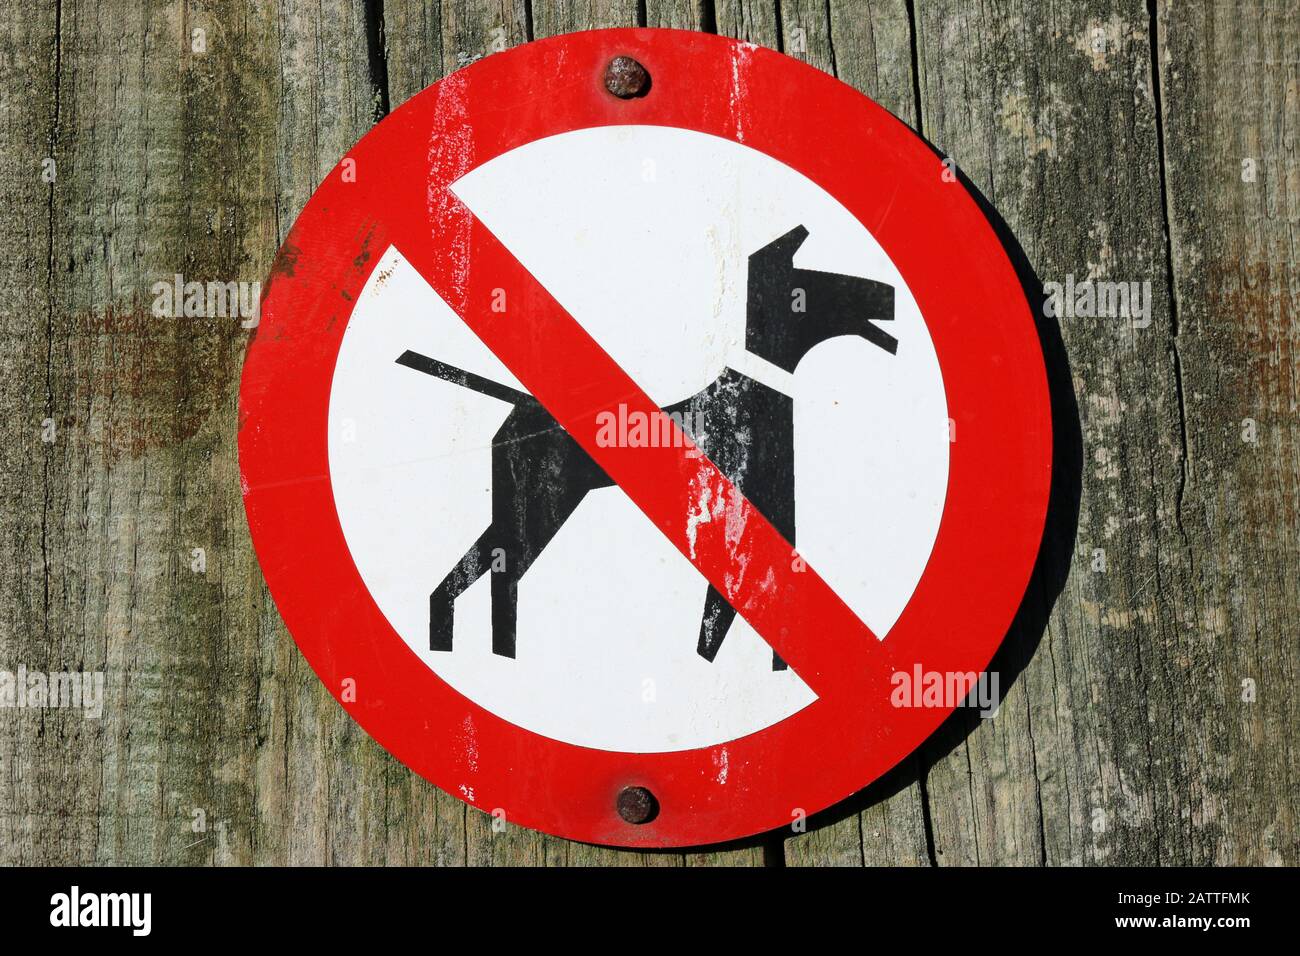 Nessun cane permesso avvertimento segno circolare con cane nero su sfondo bianco, attraversato da una linea rossa in un cerchio rosso e attaccato da chiodi a palo di legno. Foto Stock